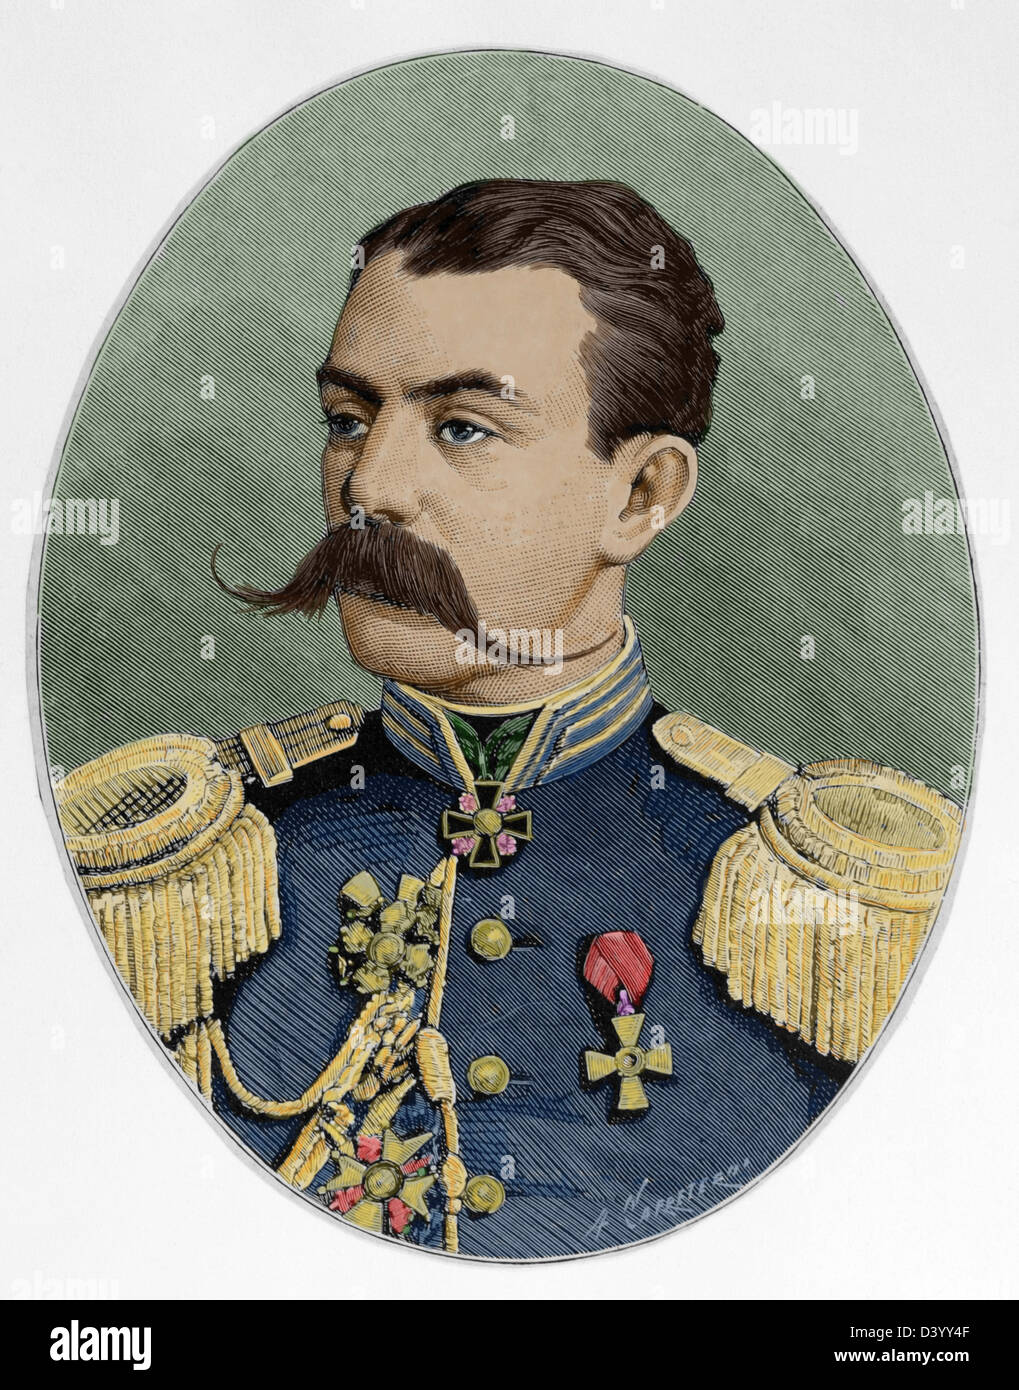 Astrukoff. Russischer General in den russisch-türkischen Krieg von 1877-1878. Farbige Gravur. Stockfoto